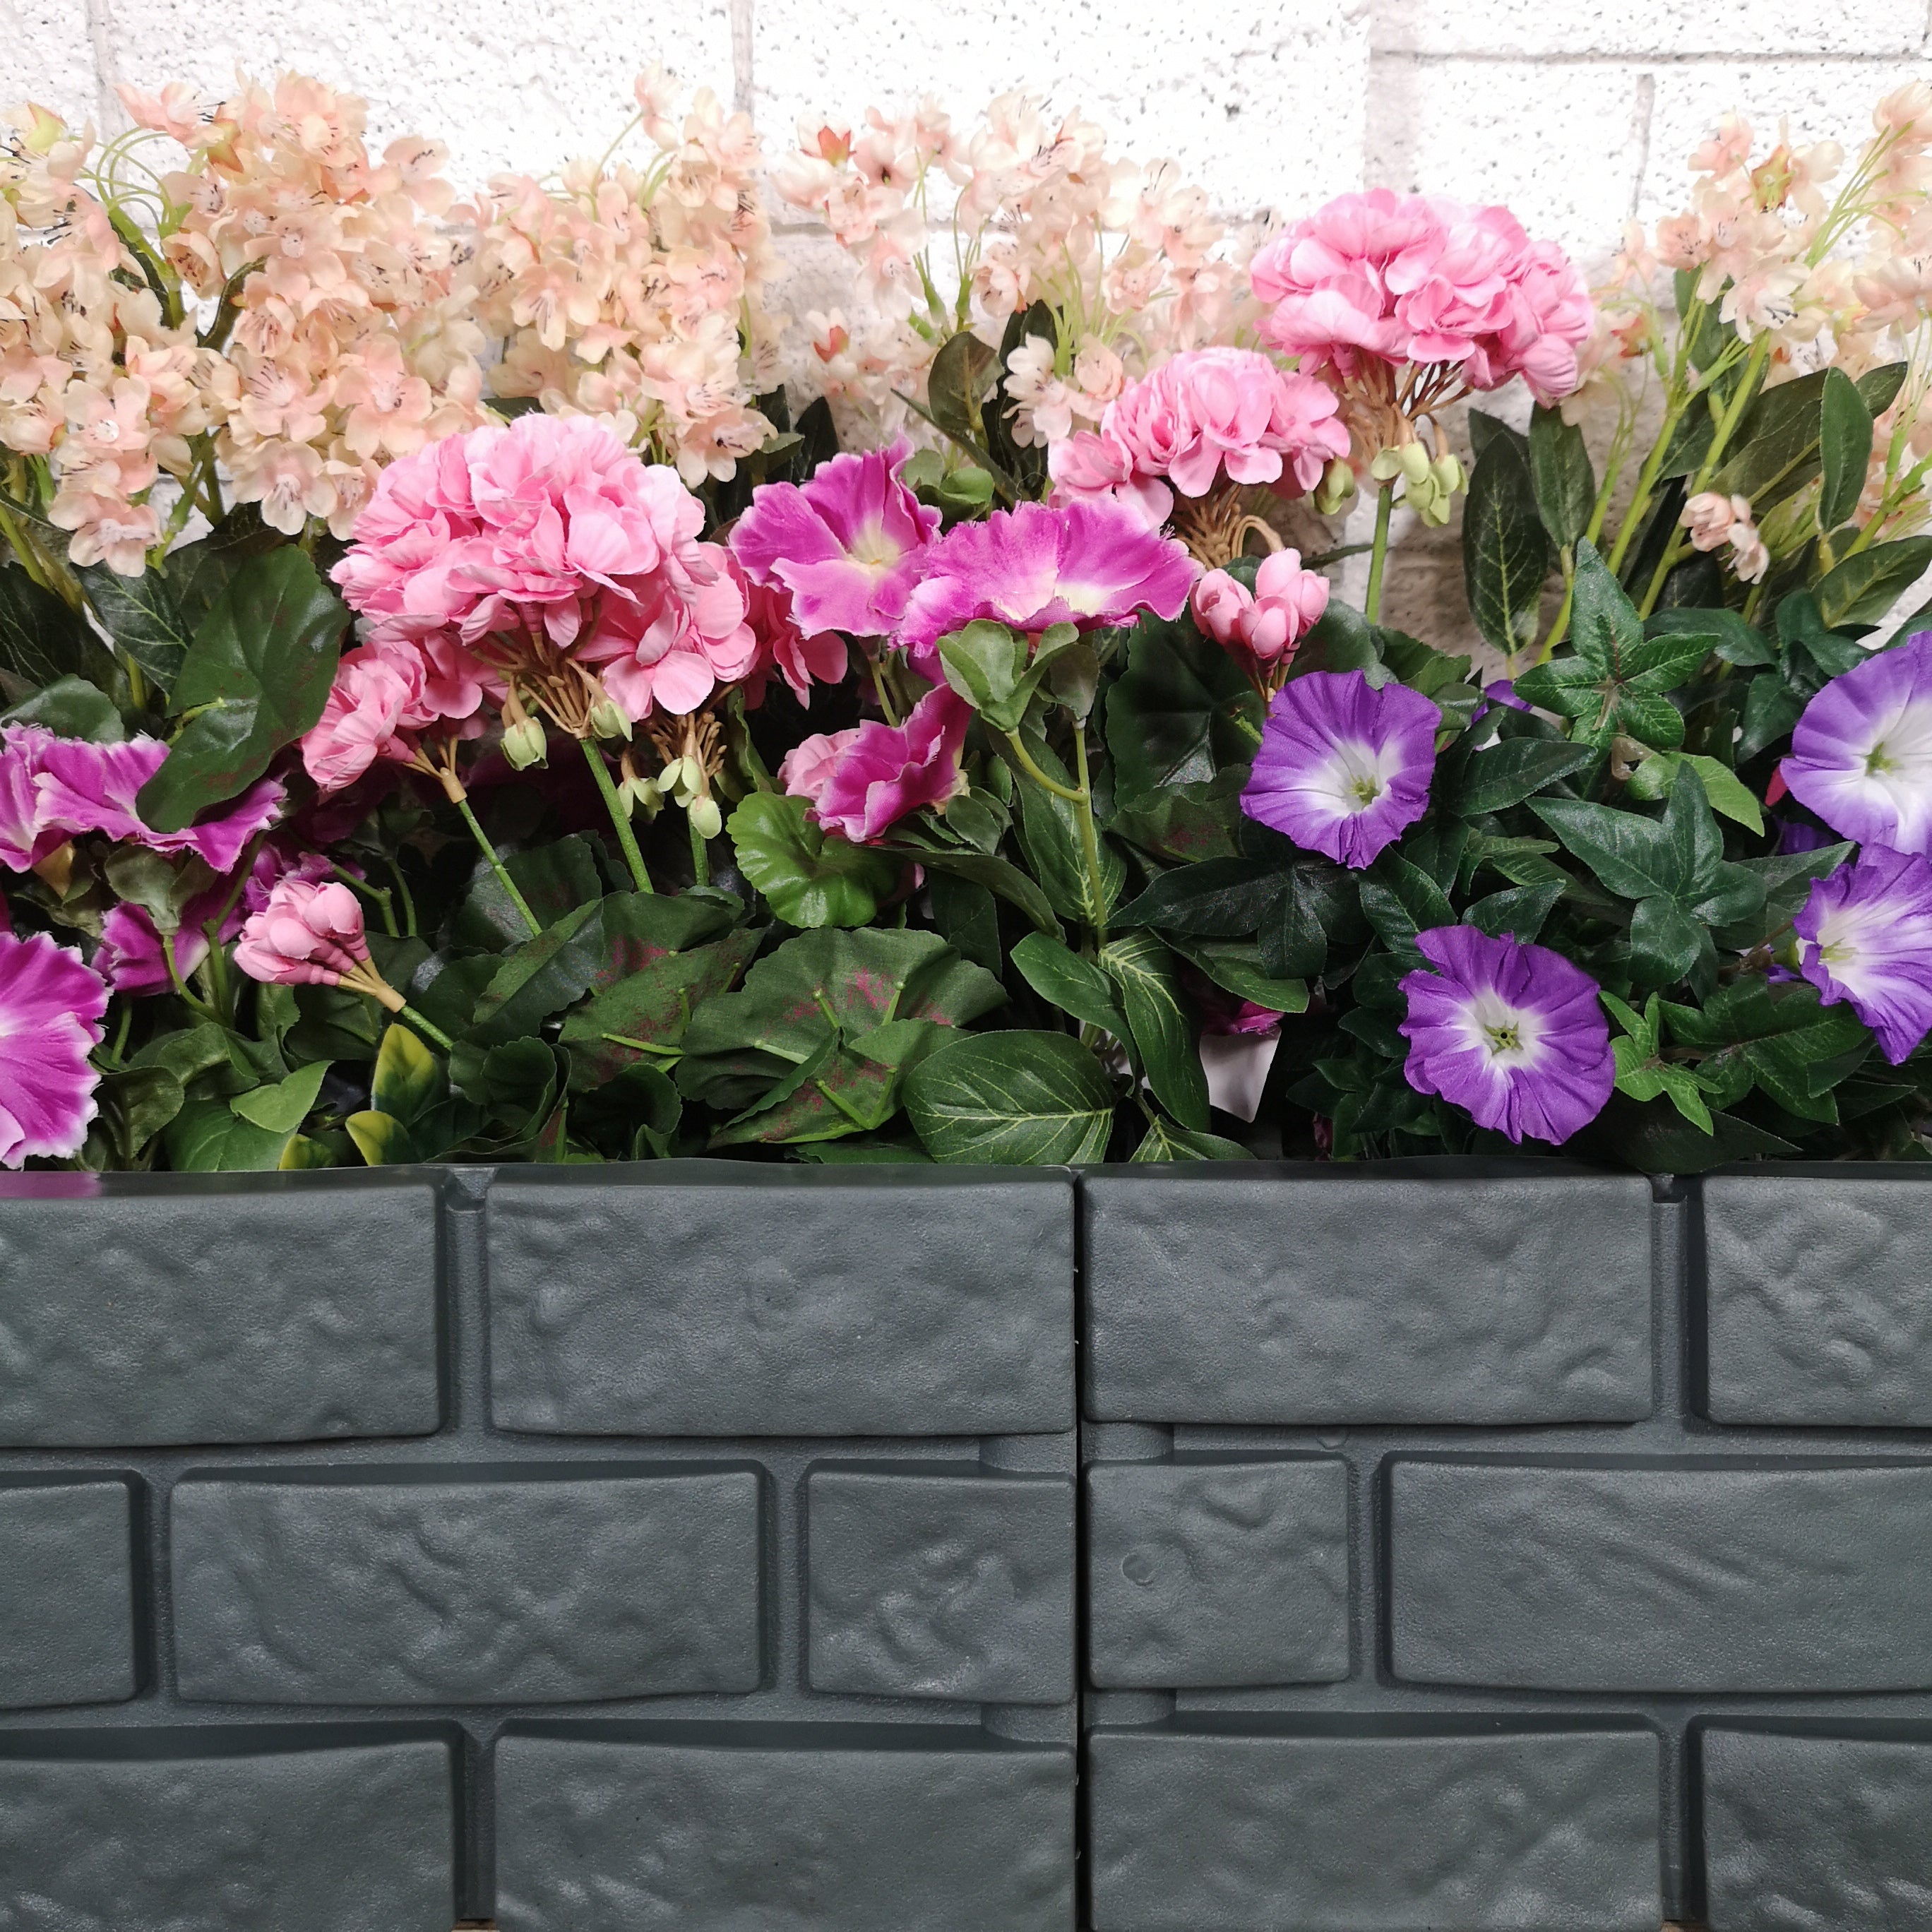 3 x 17cm 4 Piece Grey Brick Effect Garden Edging Decorative Boarder